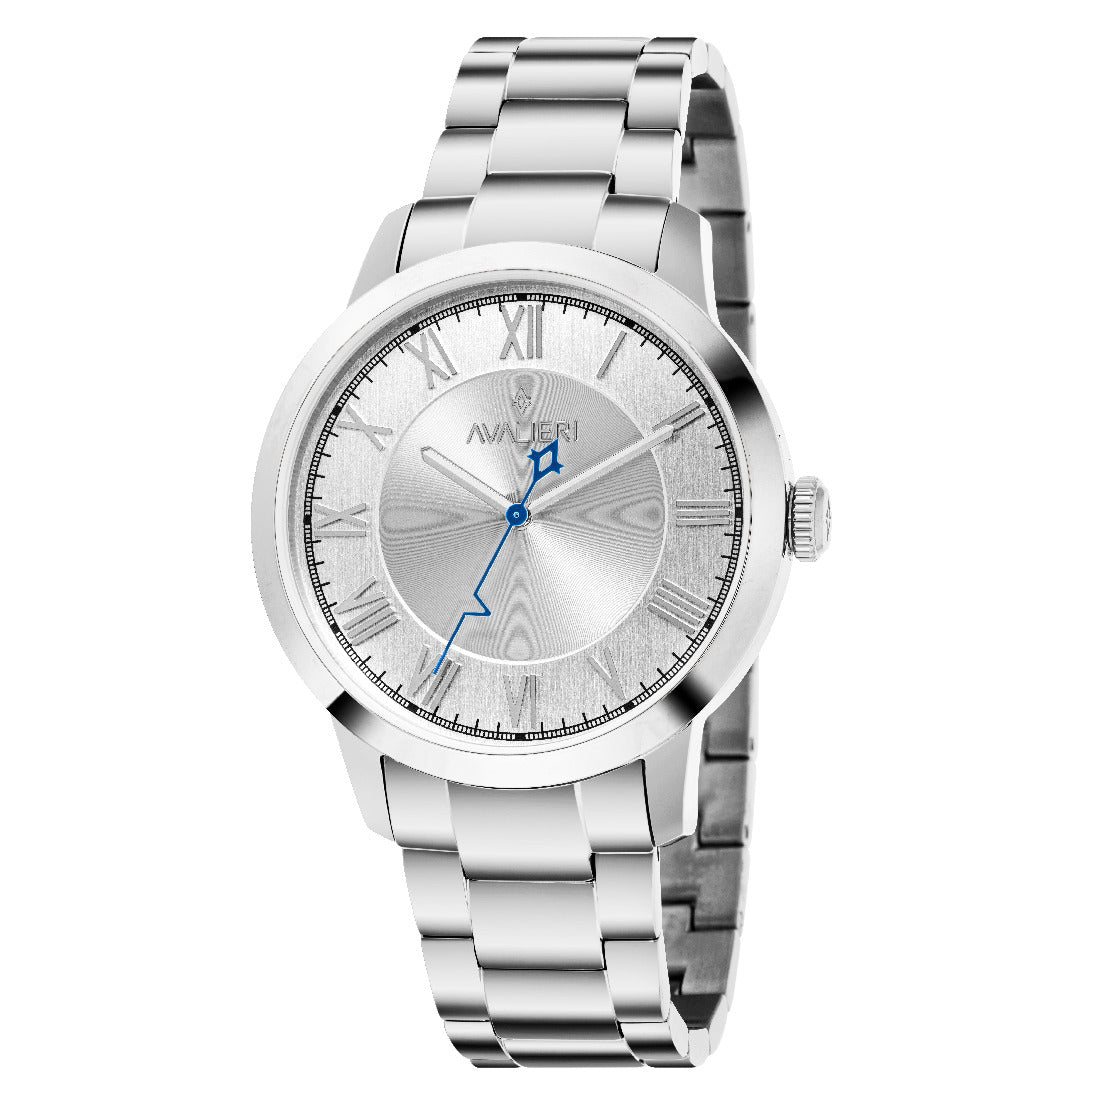 Avalieri Men's Quartz Watch, White Dial - AV-2547B